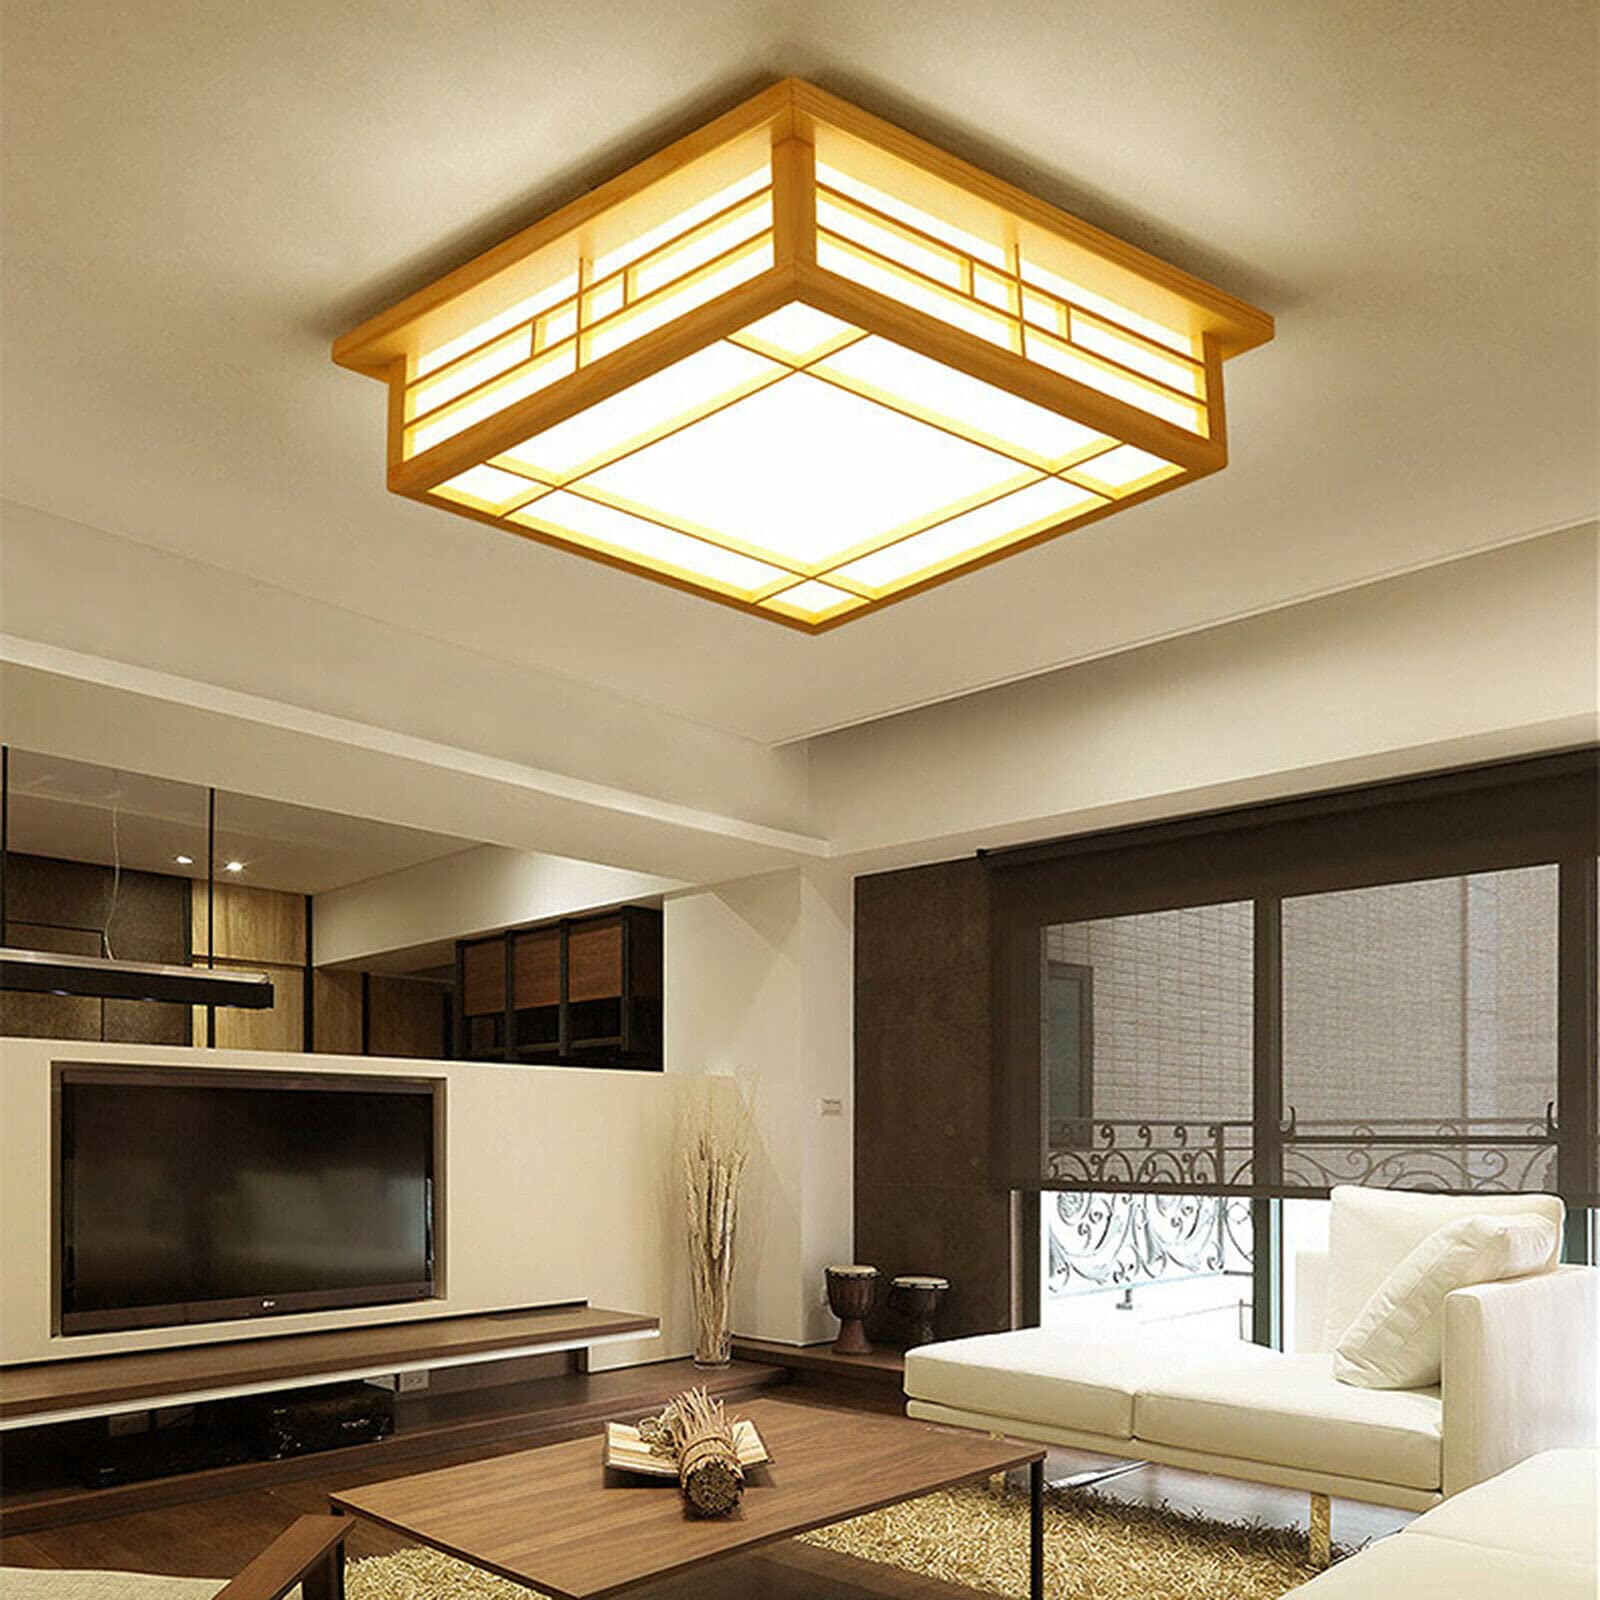 Lampada da soffitto a LED, in legno massiccio, per camera da letto, balcone, luce calda, per soggiorno, camera da letto, balcone